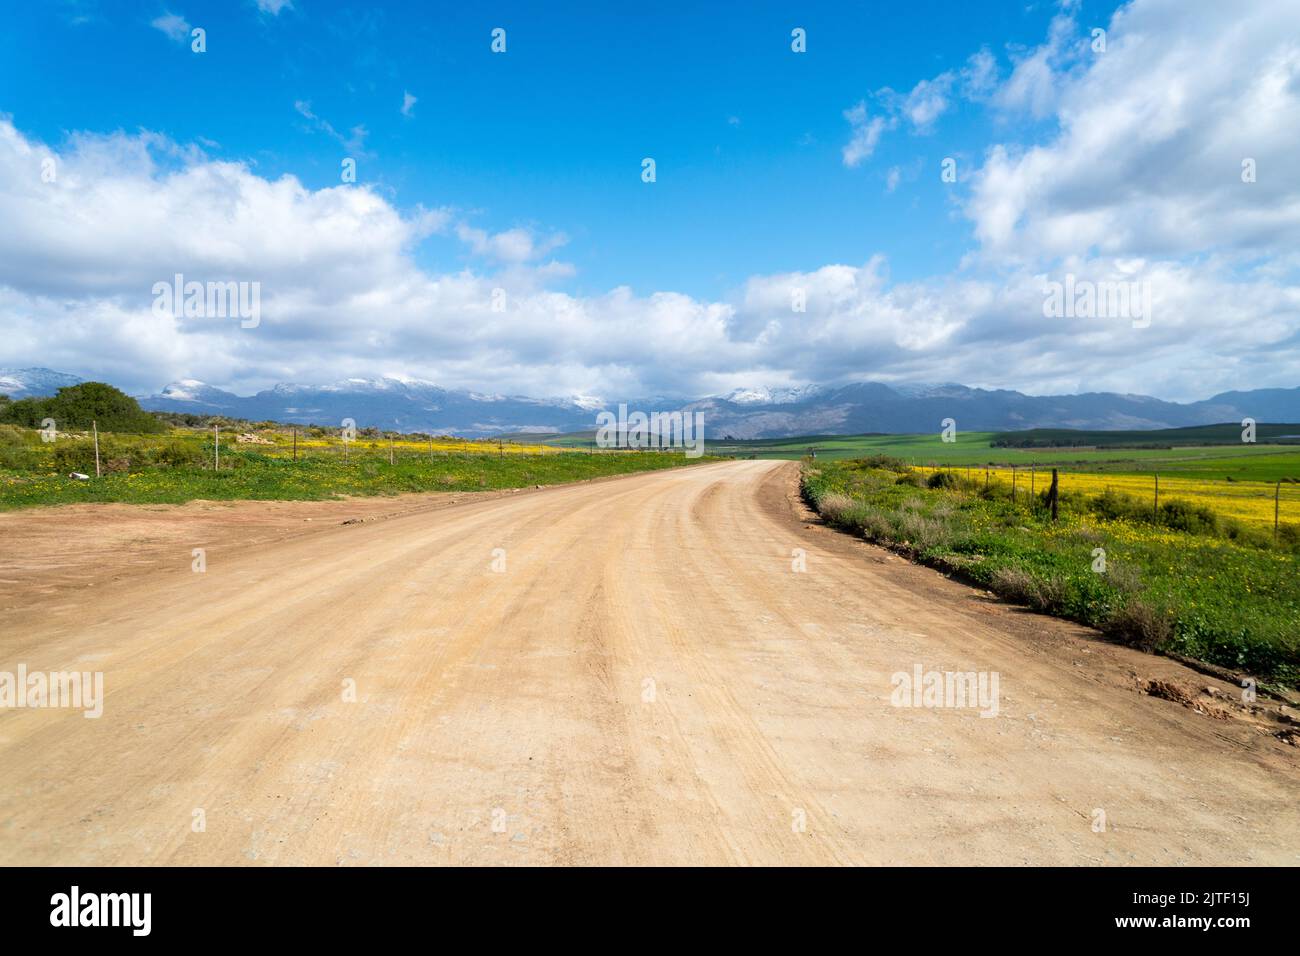 Paysage de la route de terre ou de la route agricole du Cap occidental ou de la région rurale en hiver Banque D'Images